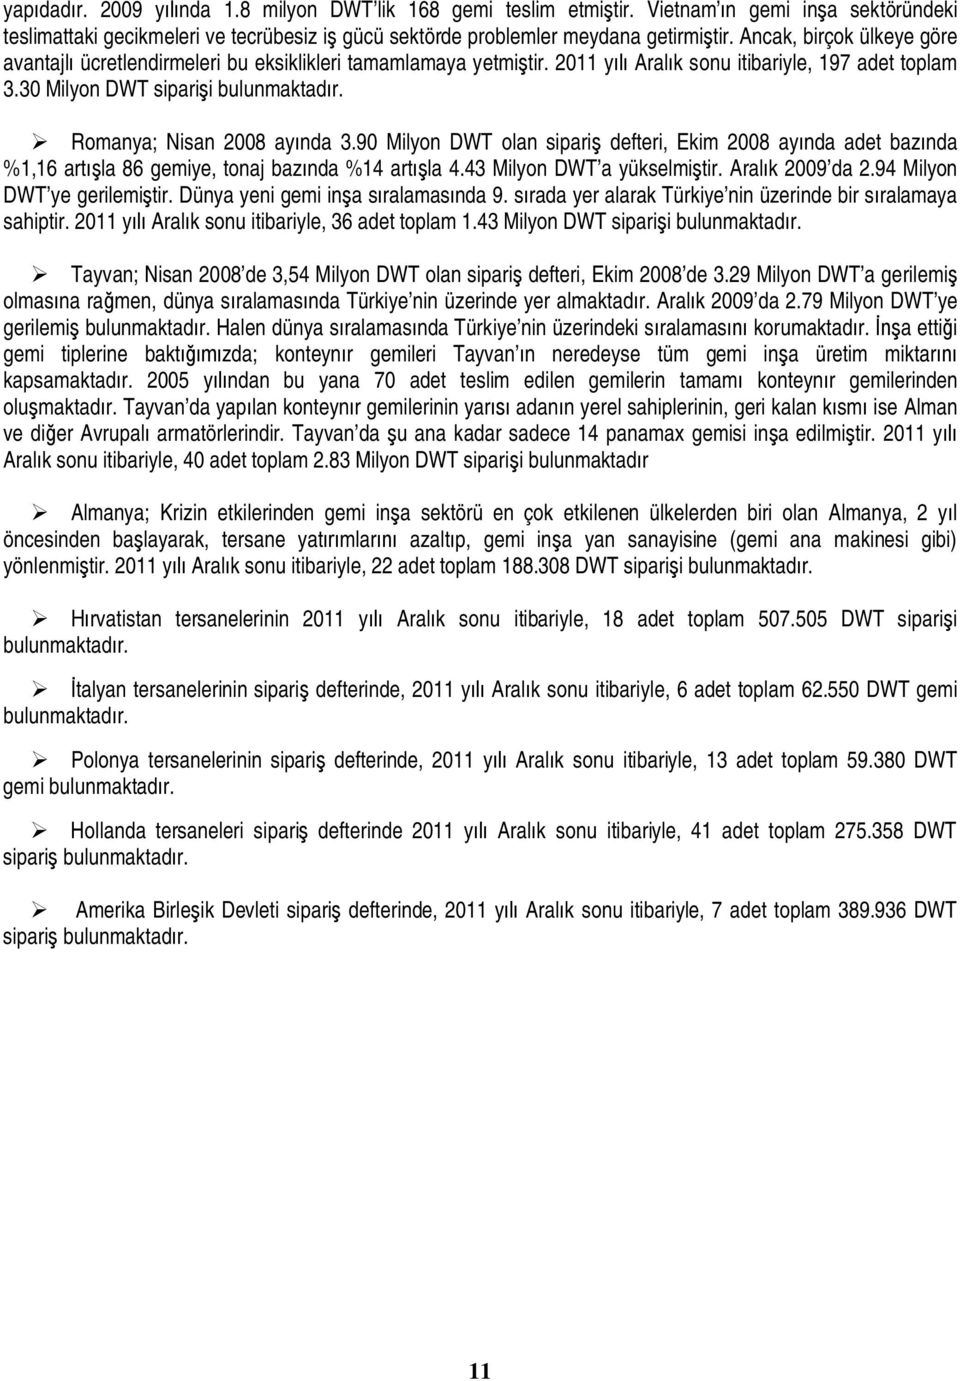 Romanya; Nisan 2008 ayında 3.90 Milyon DWT olan sipariş defteri, Ekim 2008 ayında adet bazında %1,16 artışla 86 gemiye, tonaj bazında %14 artışla 4.43 Milyon DWT a yükselmiştir. Aralık 2009 da 2.